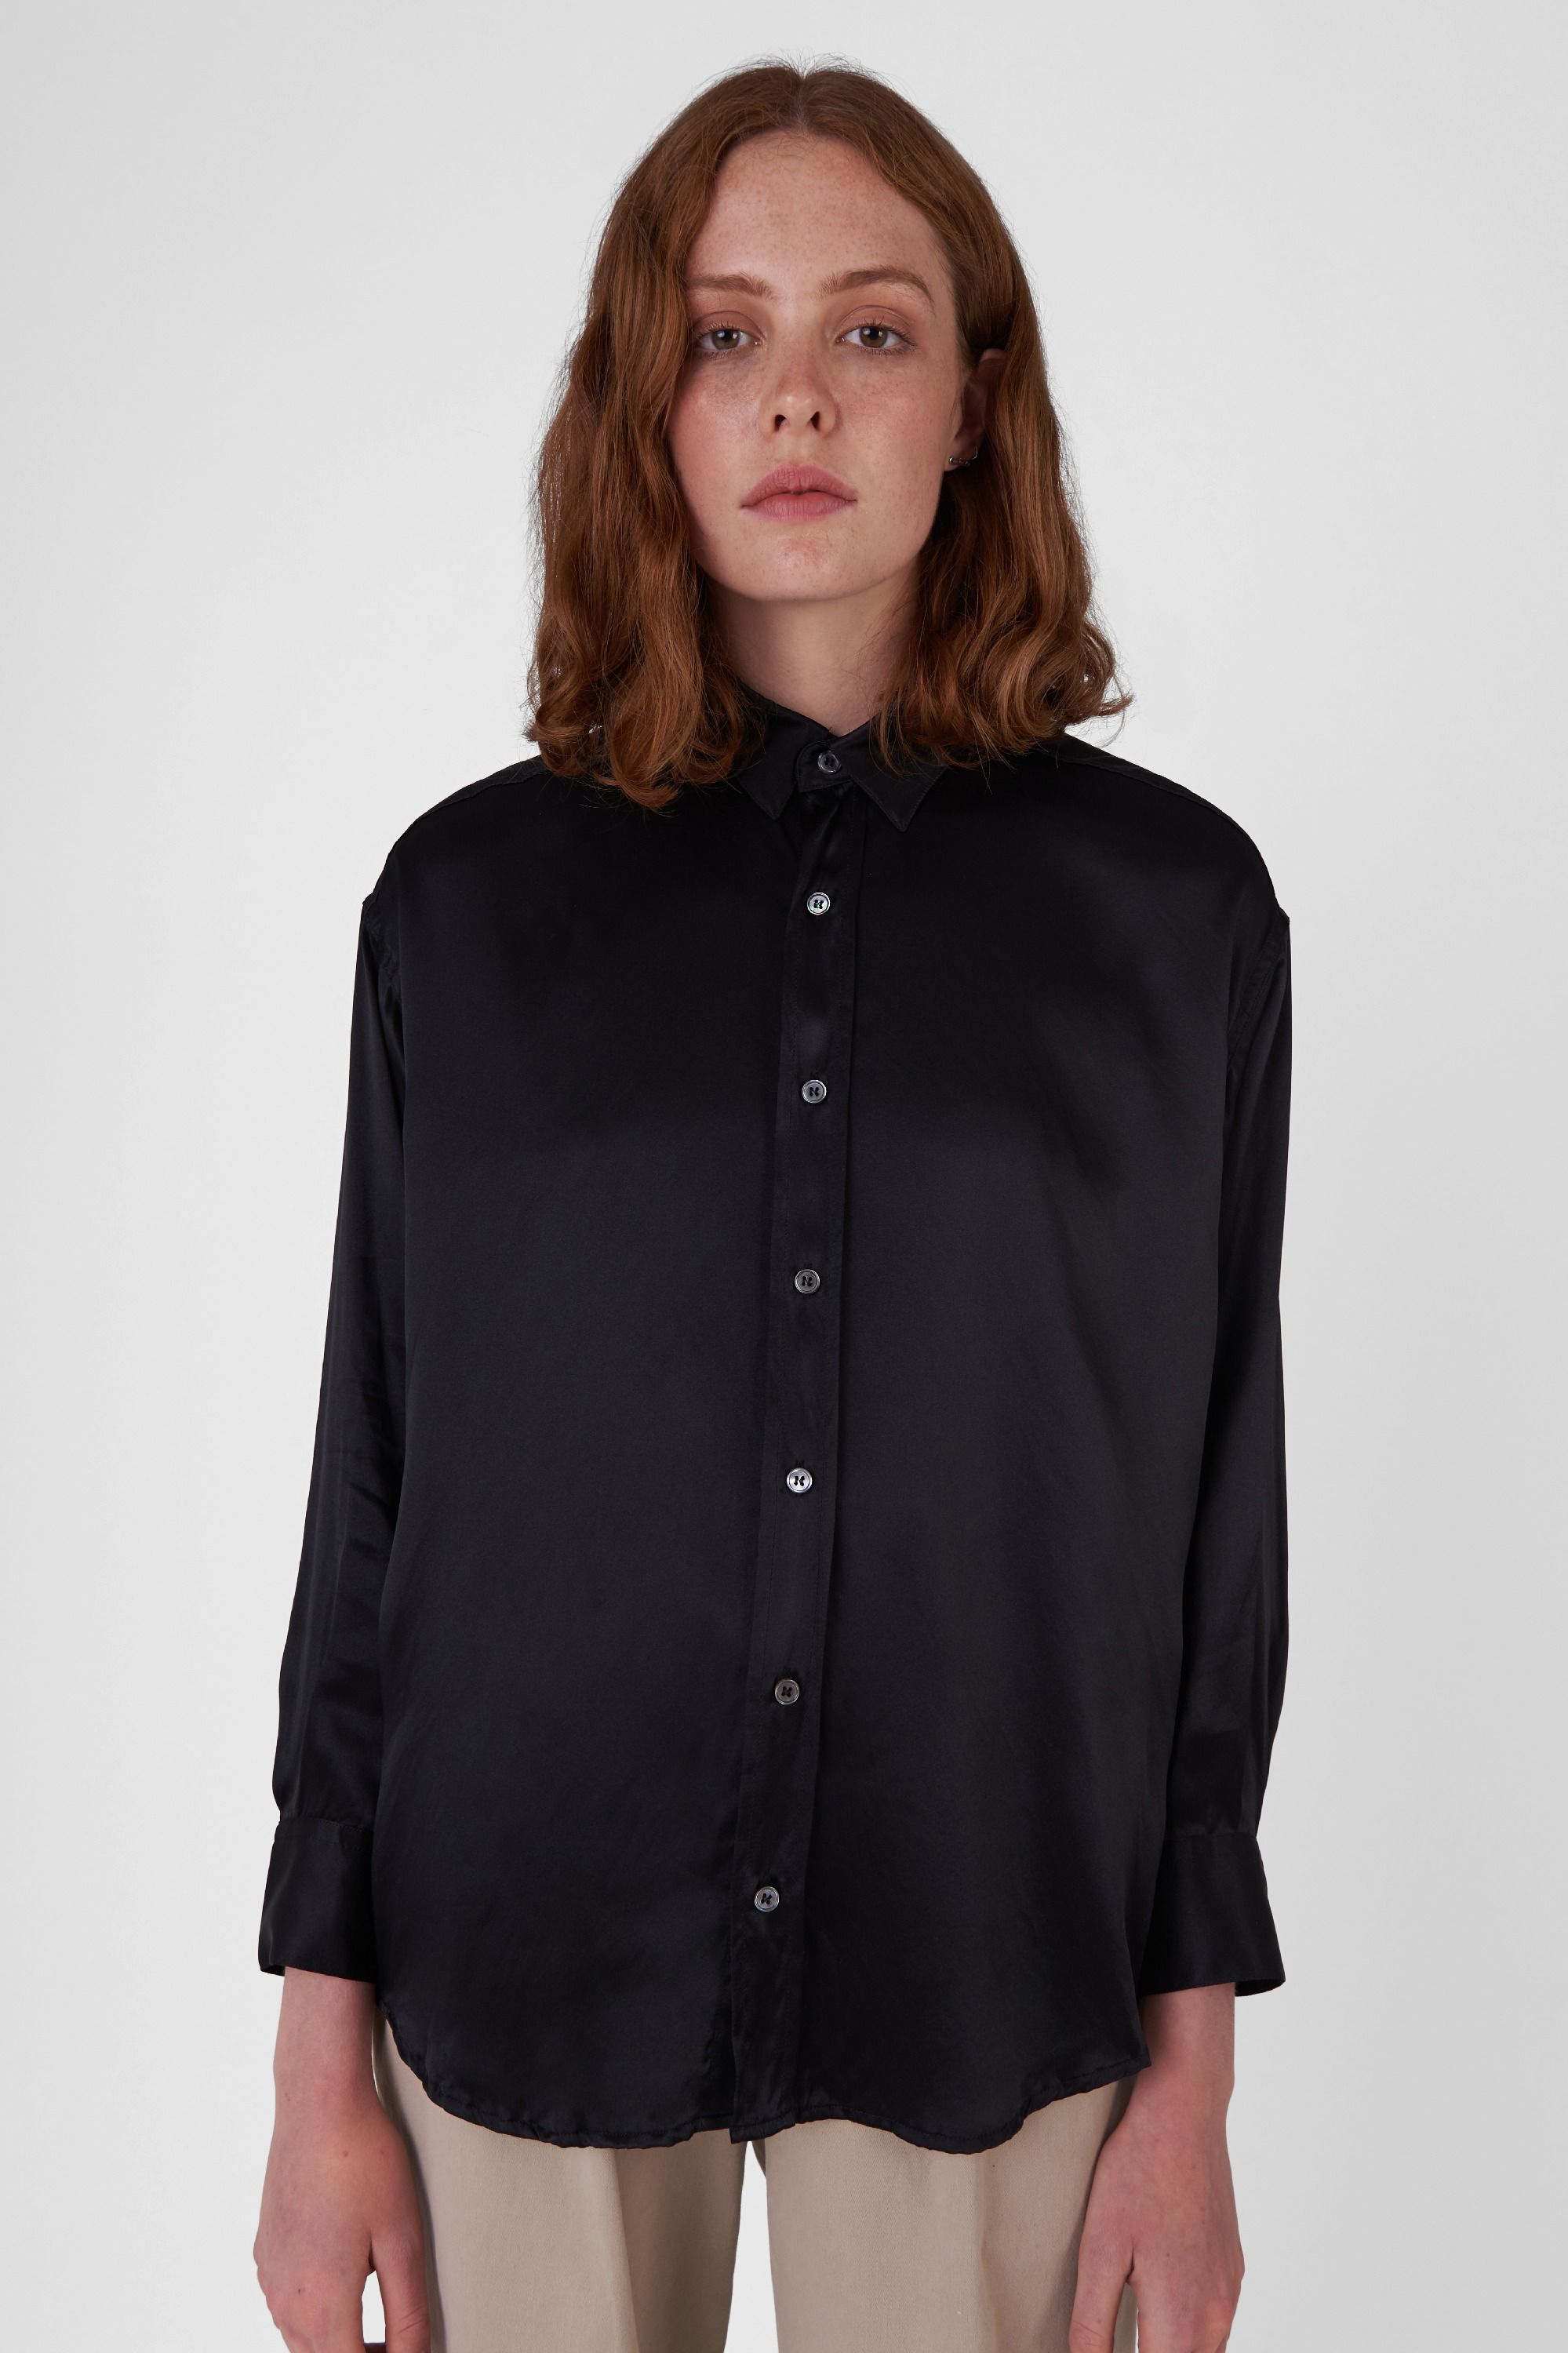 Katharine Hamnett London - Nicola Black Habotai Silk Shirt